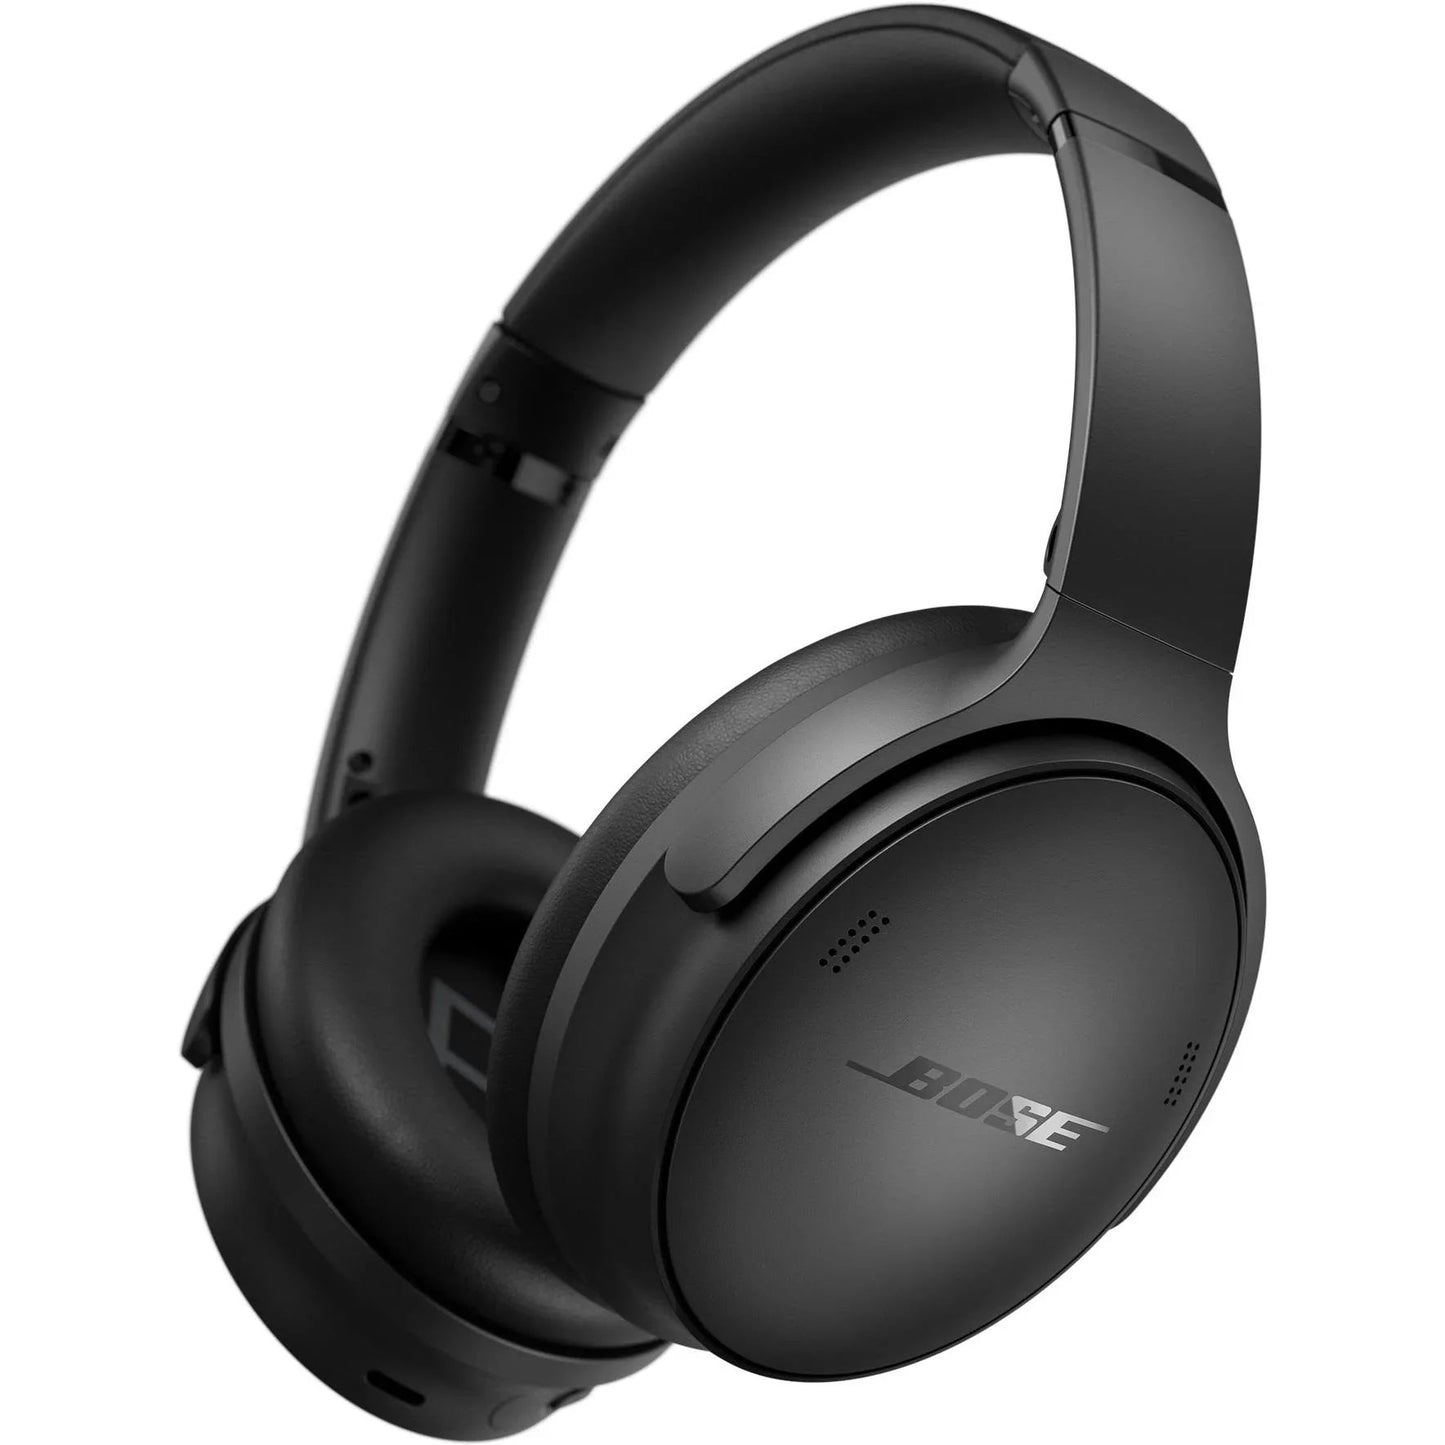 Bose Quiet Comfort Wireless Over the Ear Headphones - Black